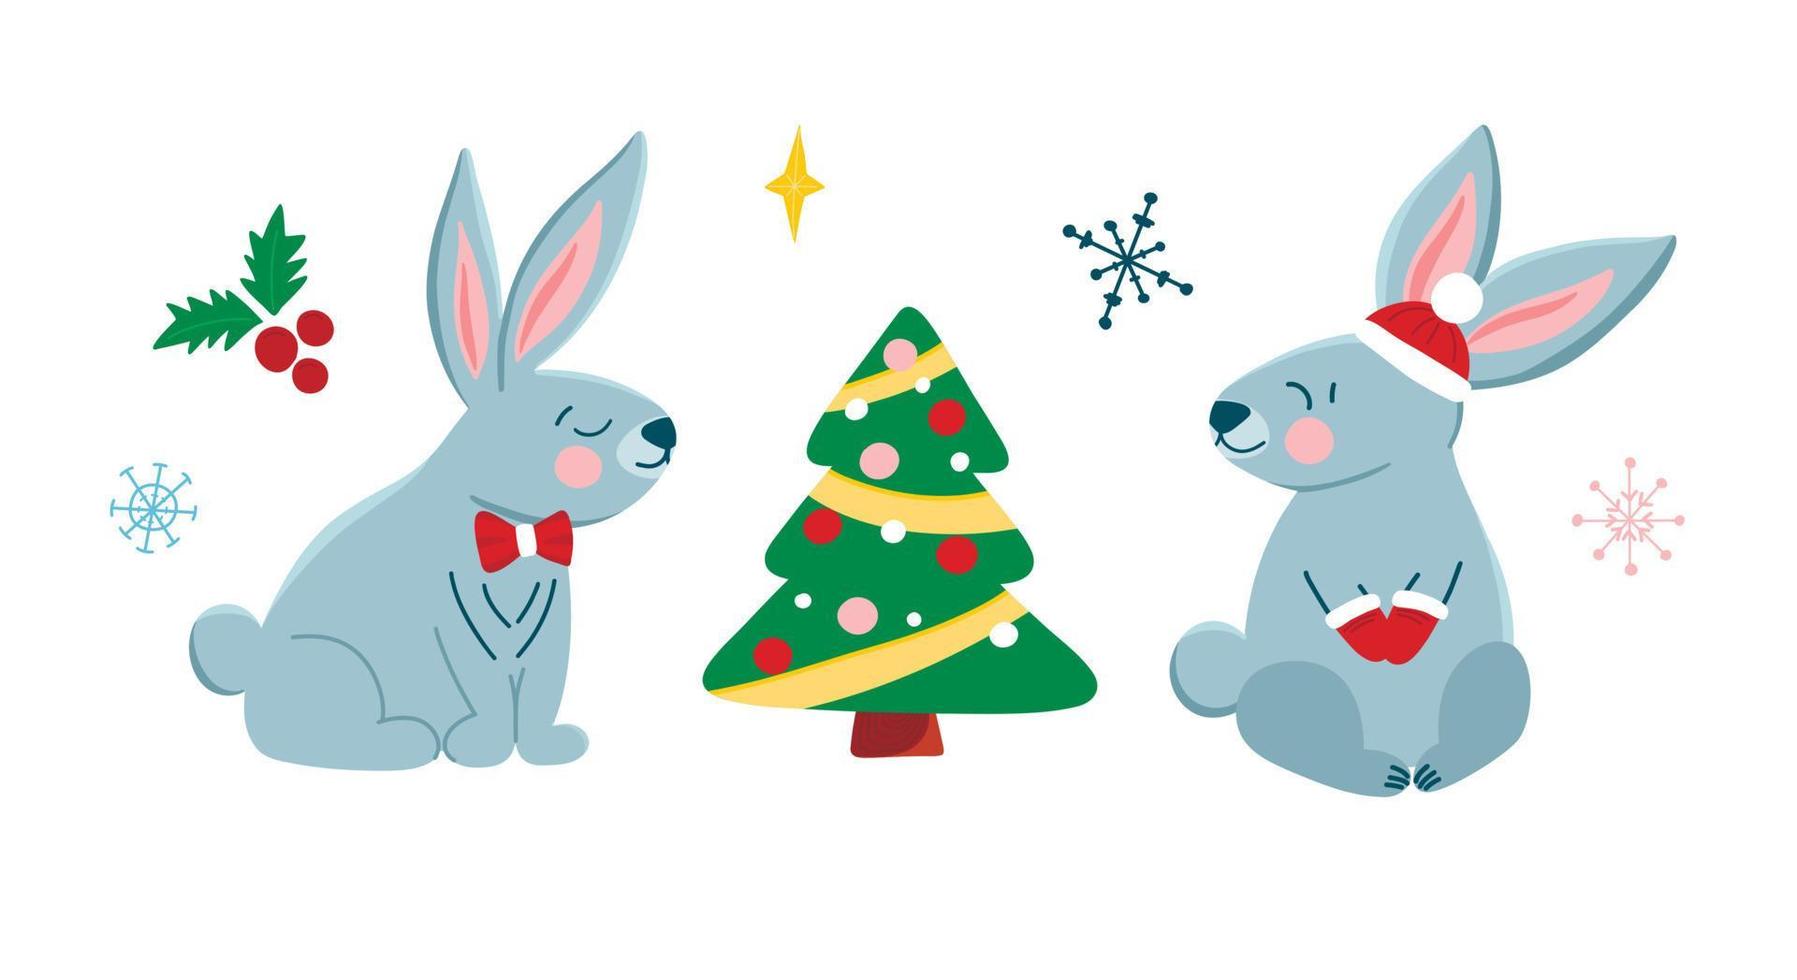 vetor definido com lindos coelhinhos de natal em estilo cartoon, símbolo do ano, árvore de natal. ilustração infantil com animais fofos para cartões postais, cartazes, design, tecidos.